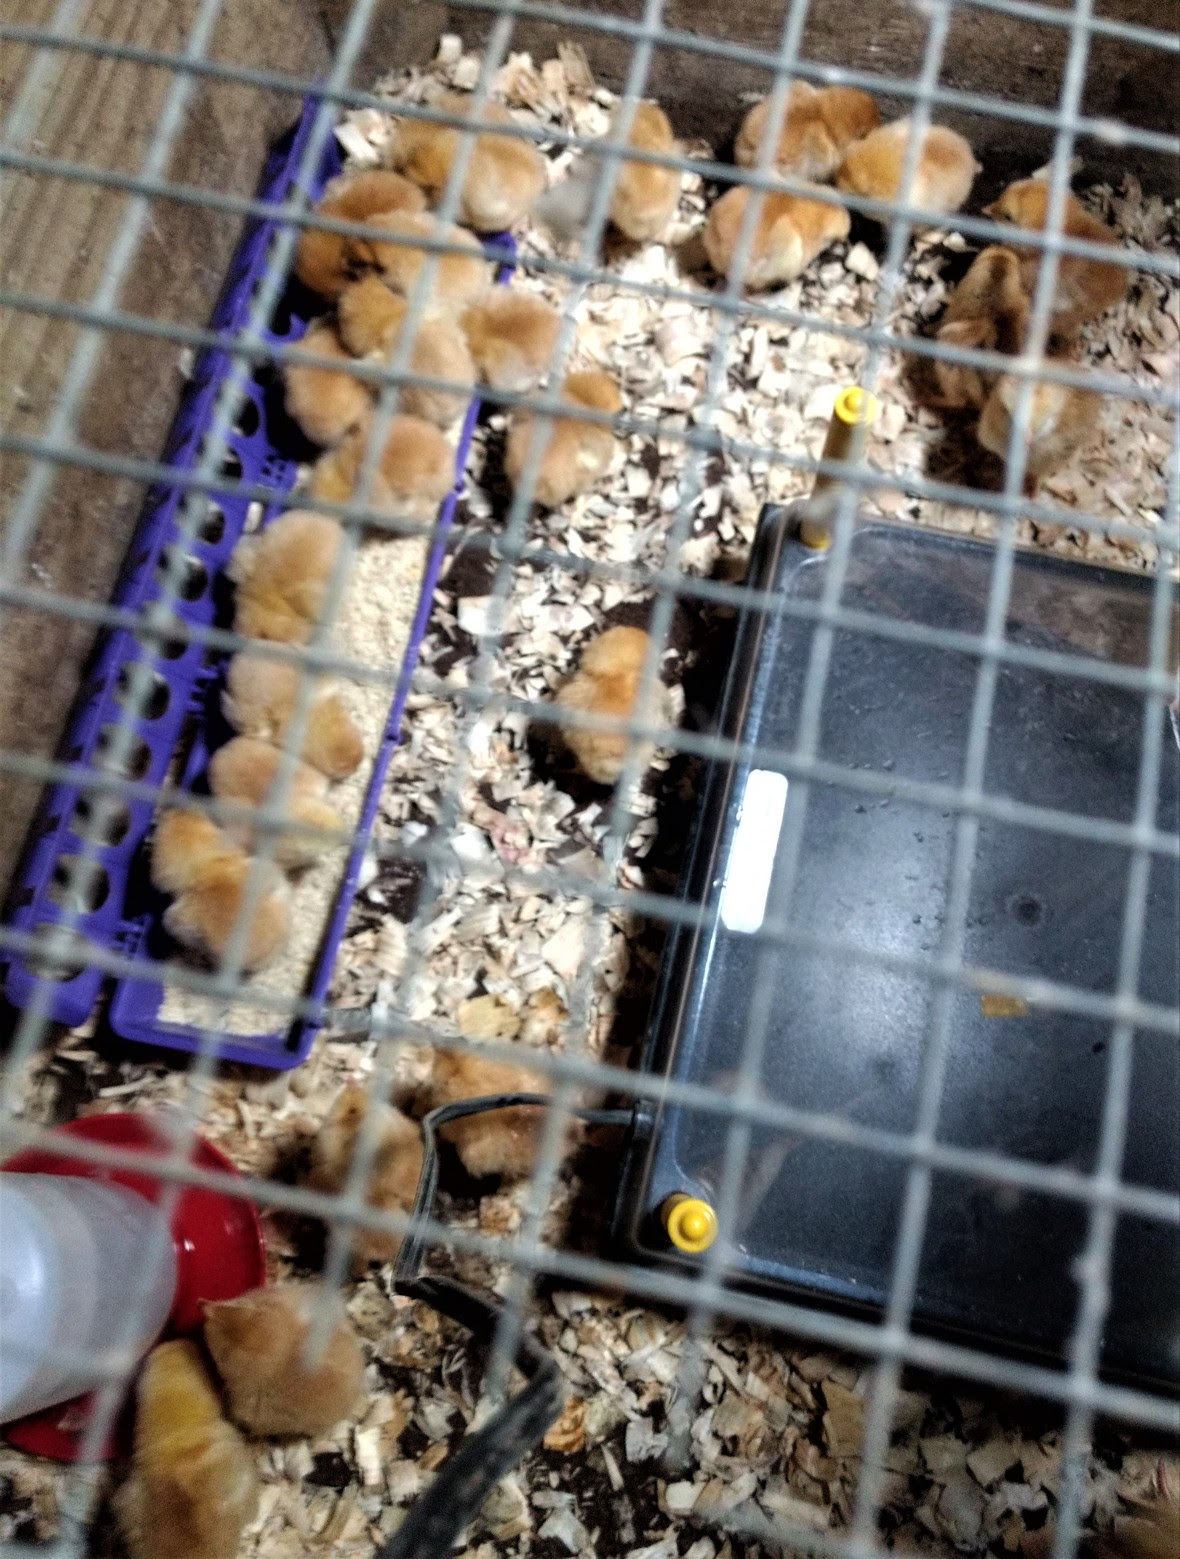 chicks arrived